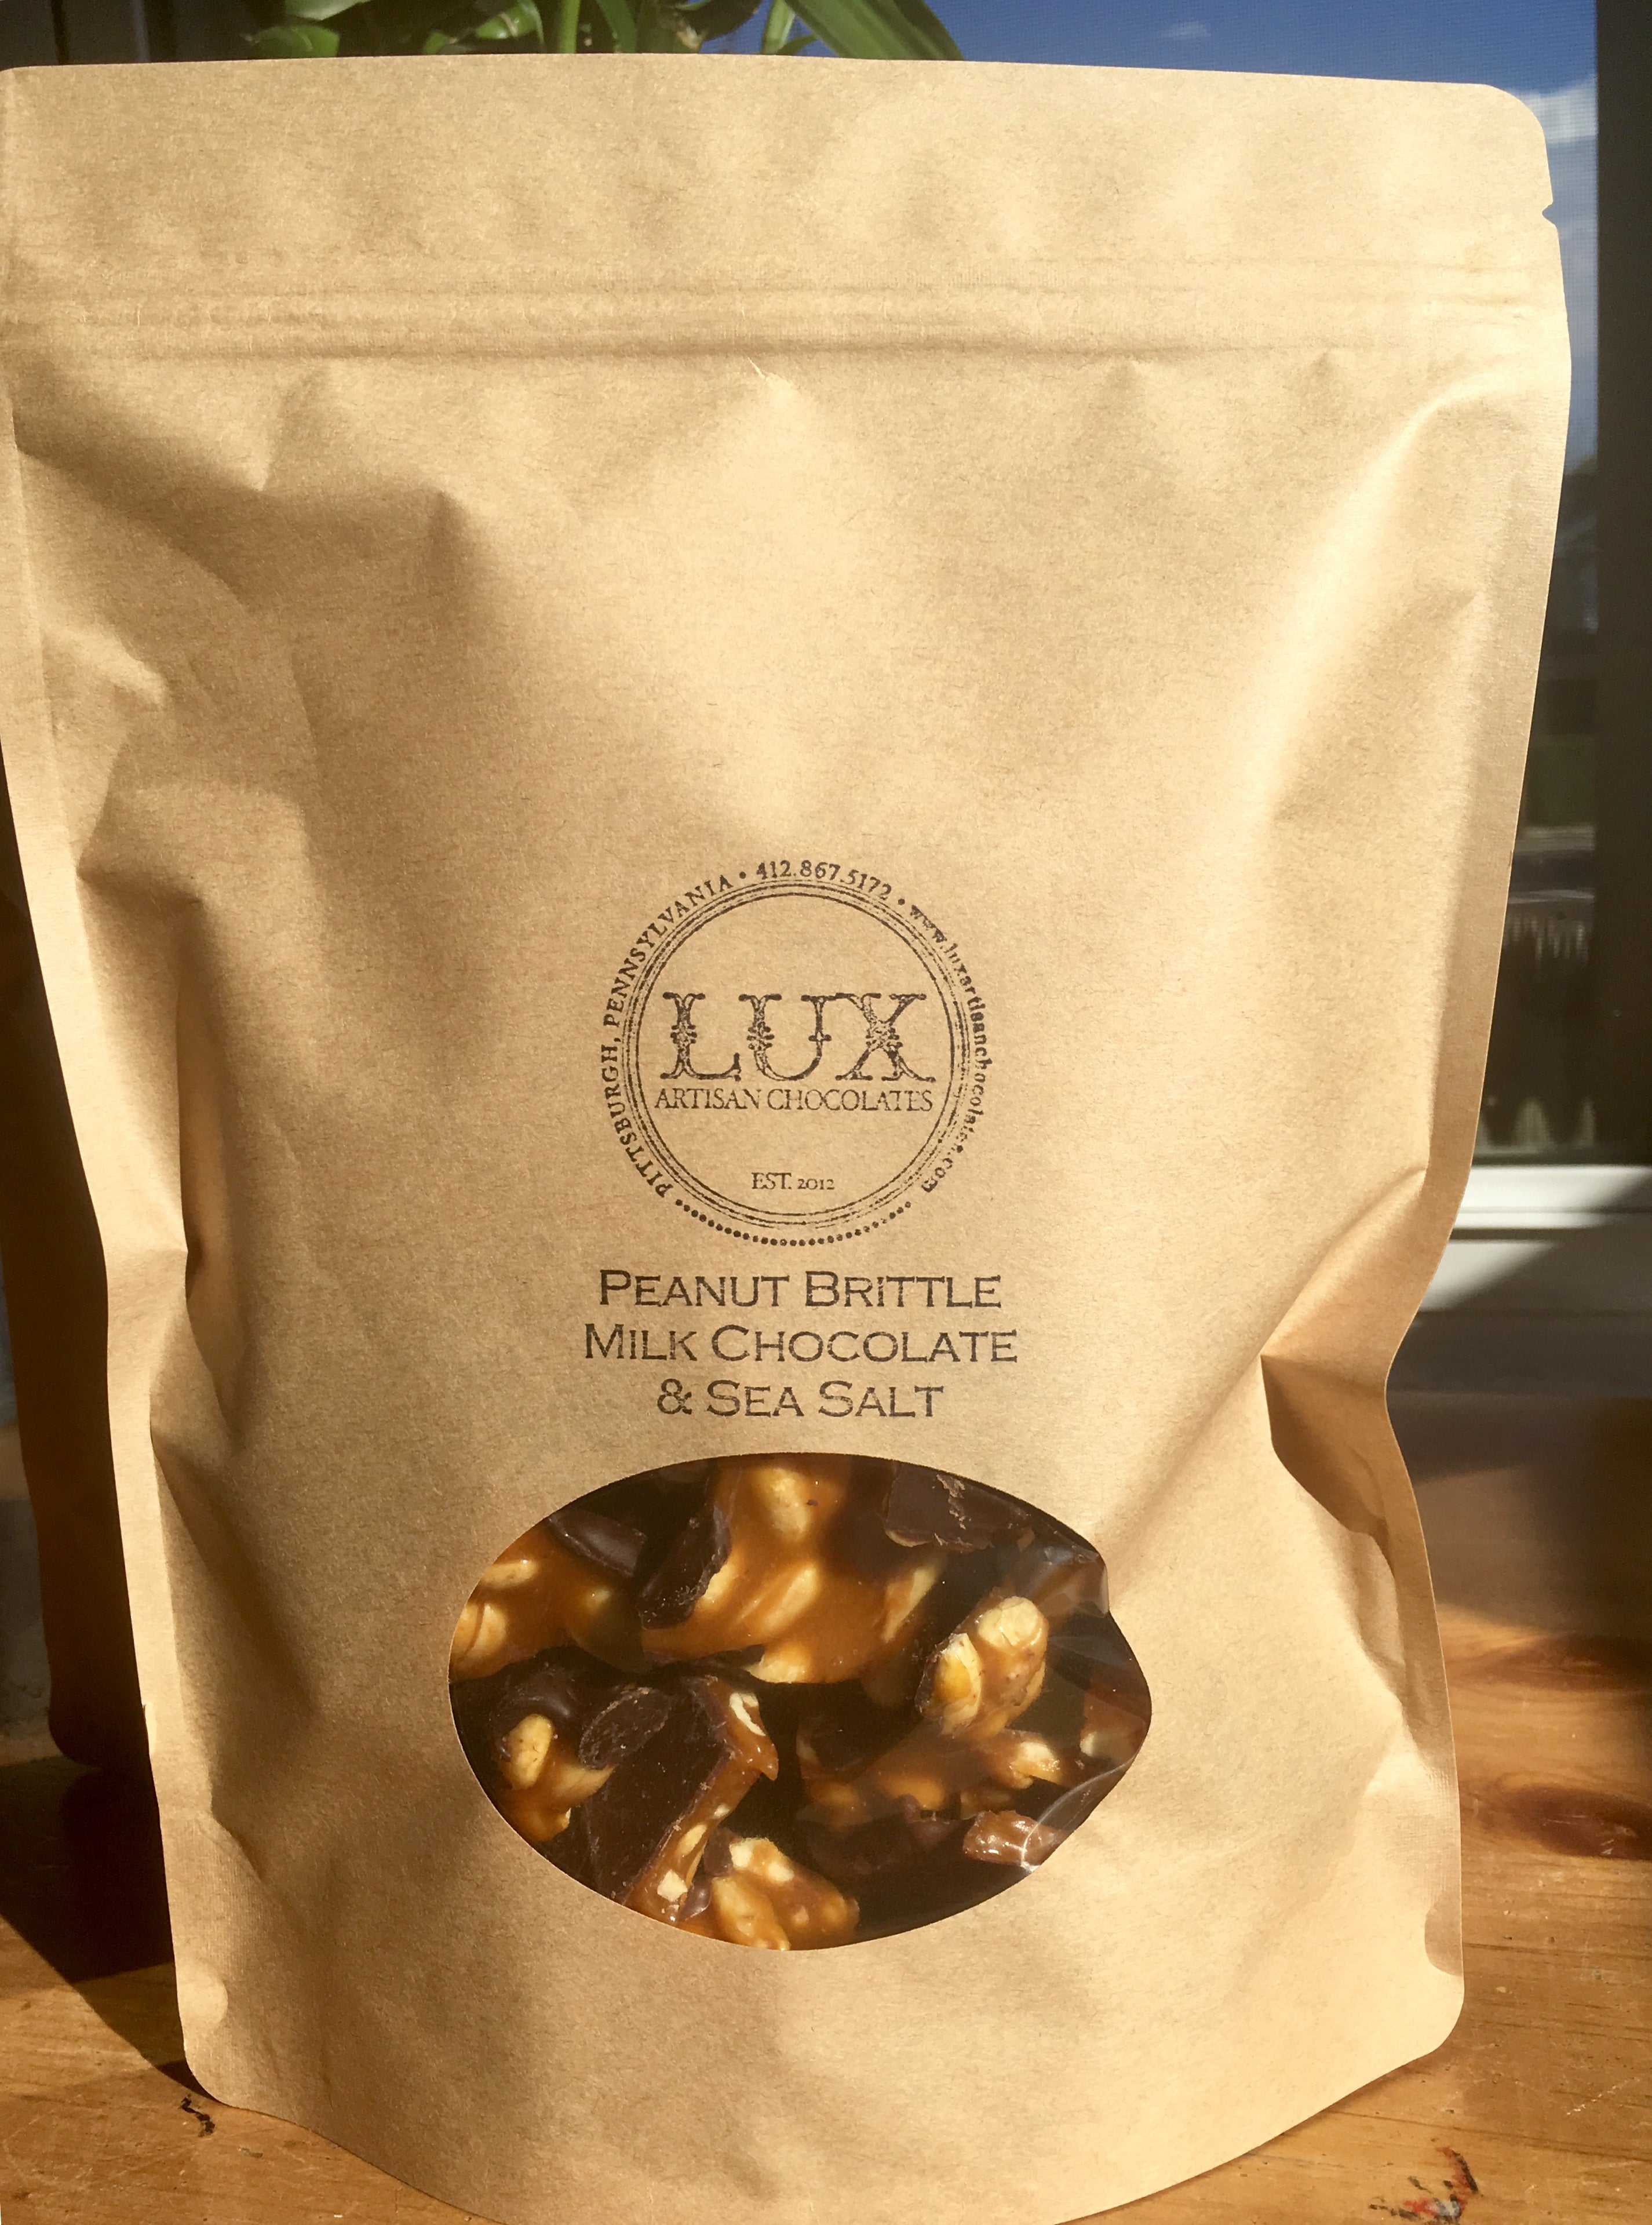 Peanut Brittle - One Pound Bag (Milk Chocolate)